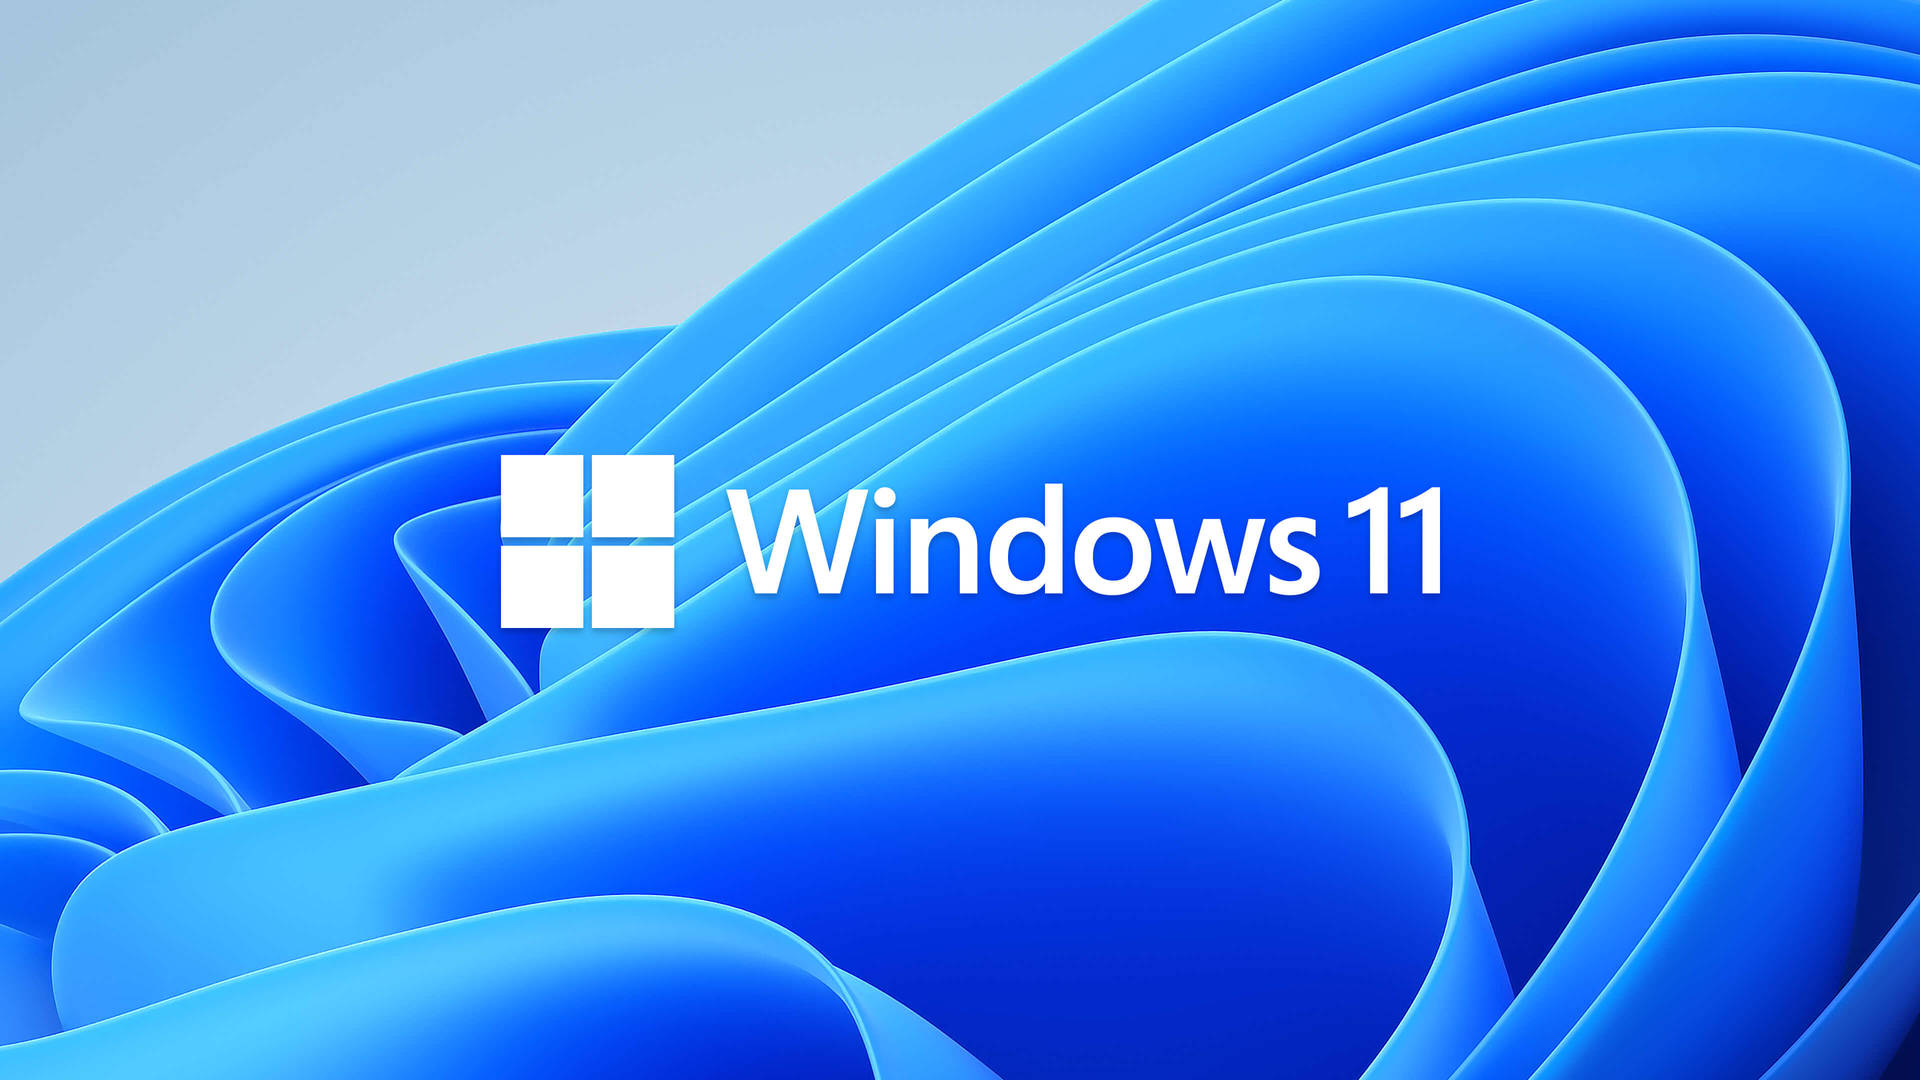 Windows 11 Blue Flower Pattern Wallpaper